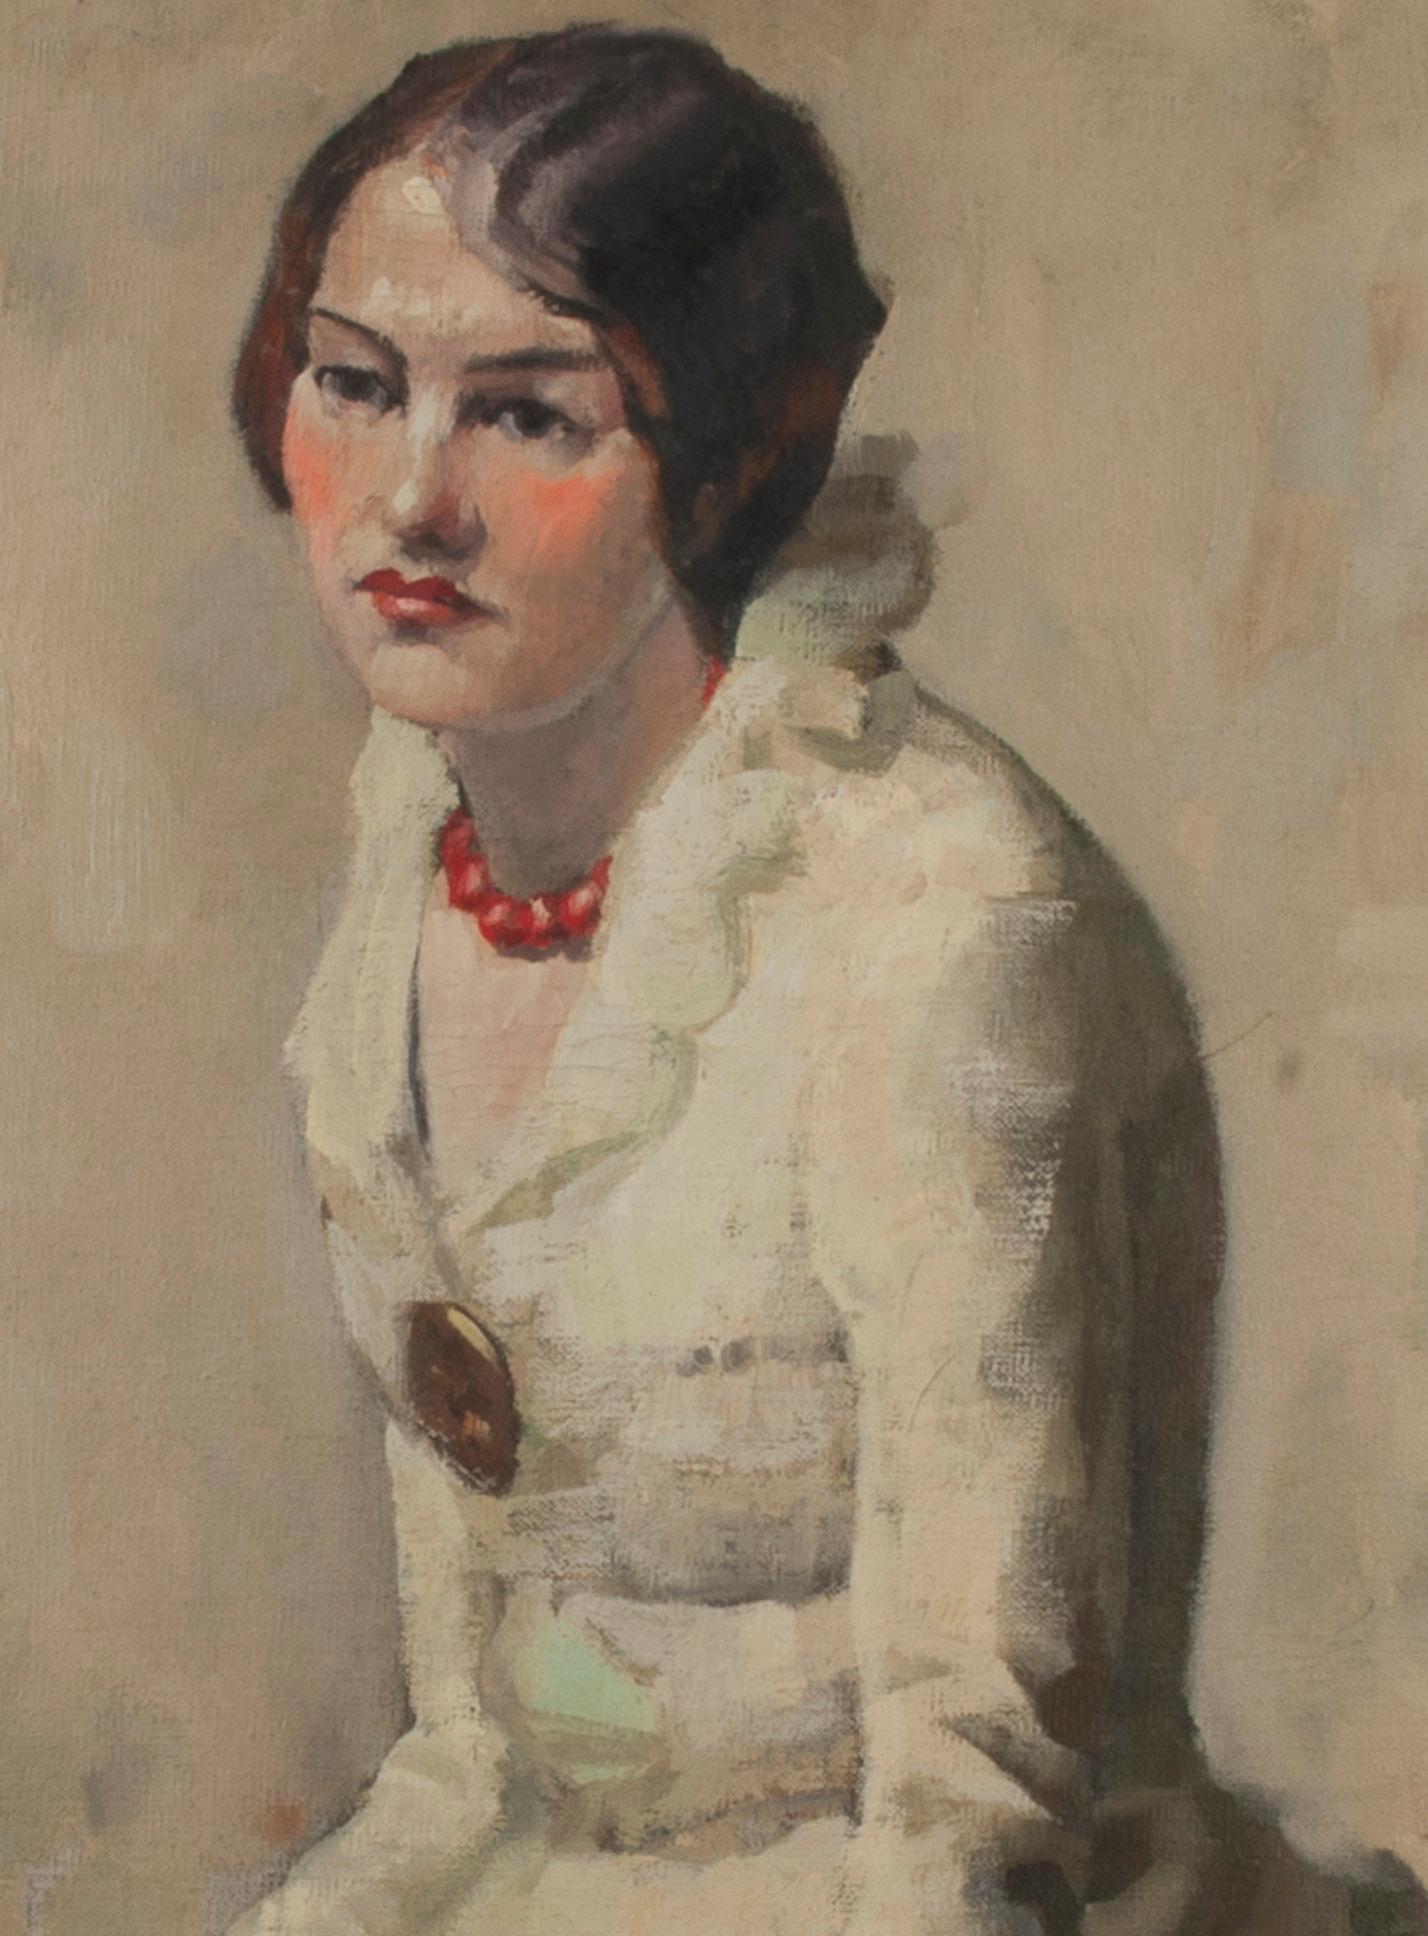 Porträt einer sitzenden Frau
öl auf leinwand, um 1930
Rückseitig in Ölfarbe signiert: 